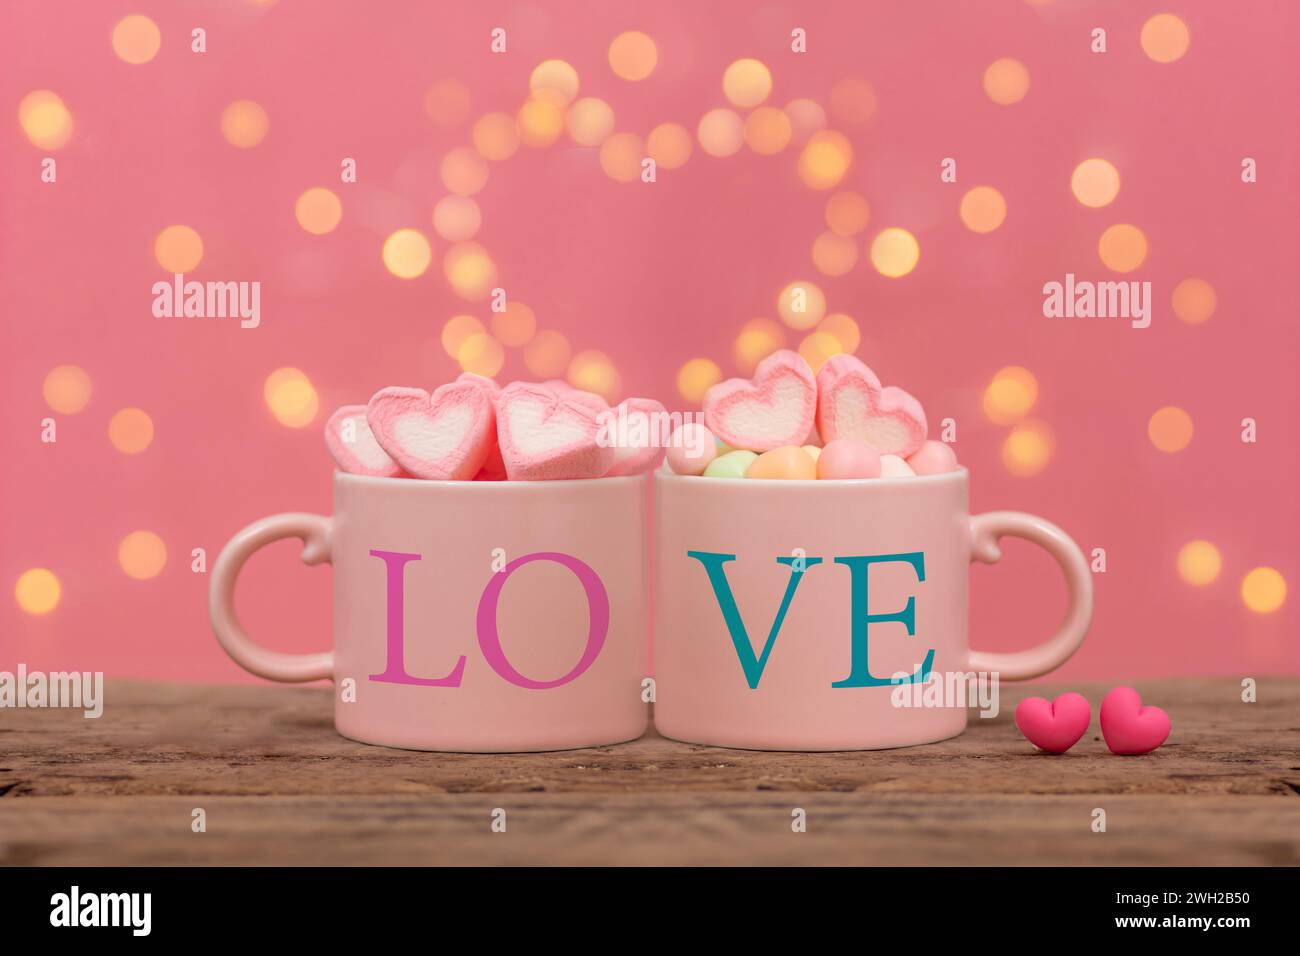 due tazze da caffè rosa con scritta "love beside", marshmallow a forma di cuore decorato sulla sommità, con due piccoli cuori posizionati fianco a fianco su un tavolo di legno Foto Stock